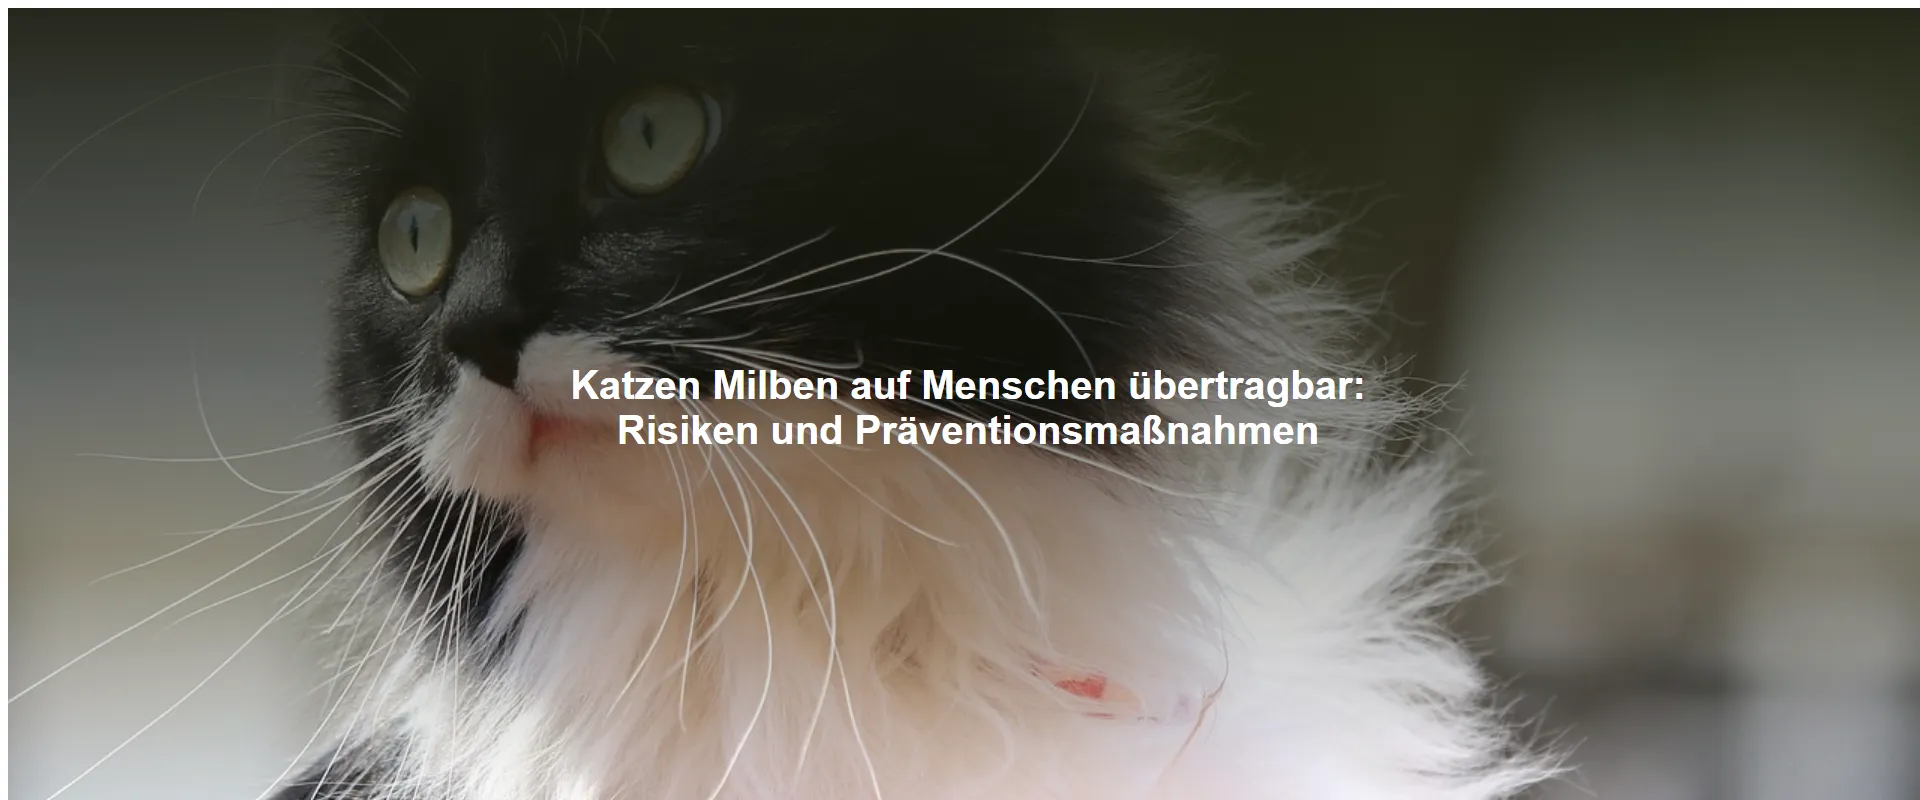 Katzen Milben auf Menschen übertragbar – Risiken und Präventionsmaßnahmen